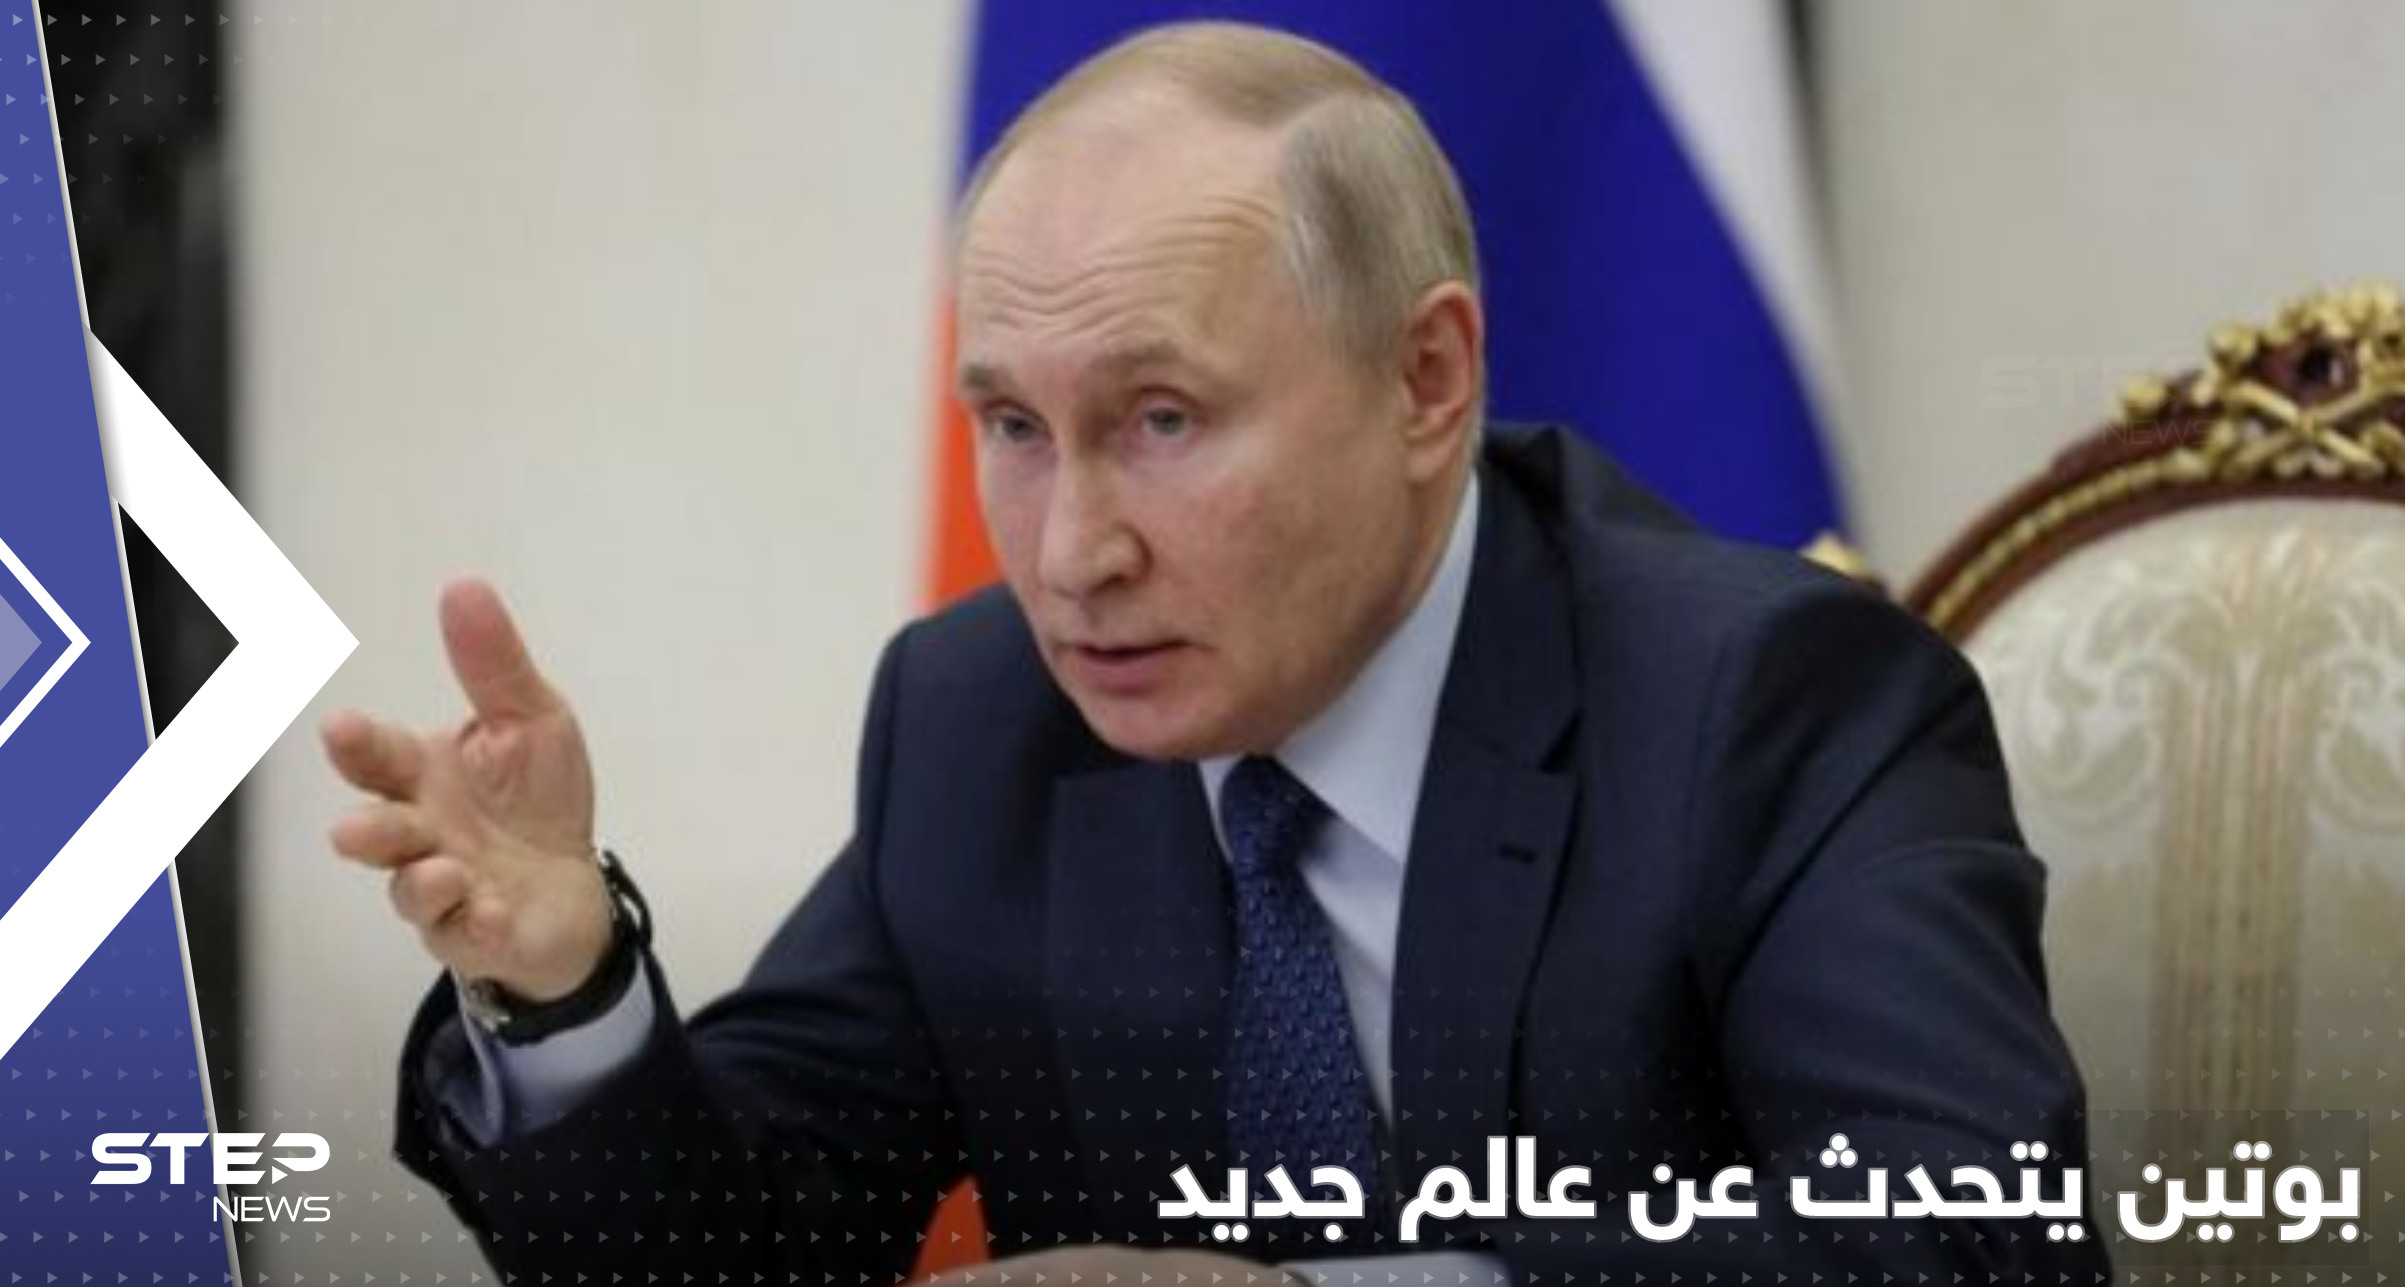 بوتين يتحدث عن "اجتماع جاء في وقته" وعالم جديد قيد التشكّل في 3 قارات 